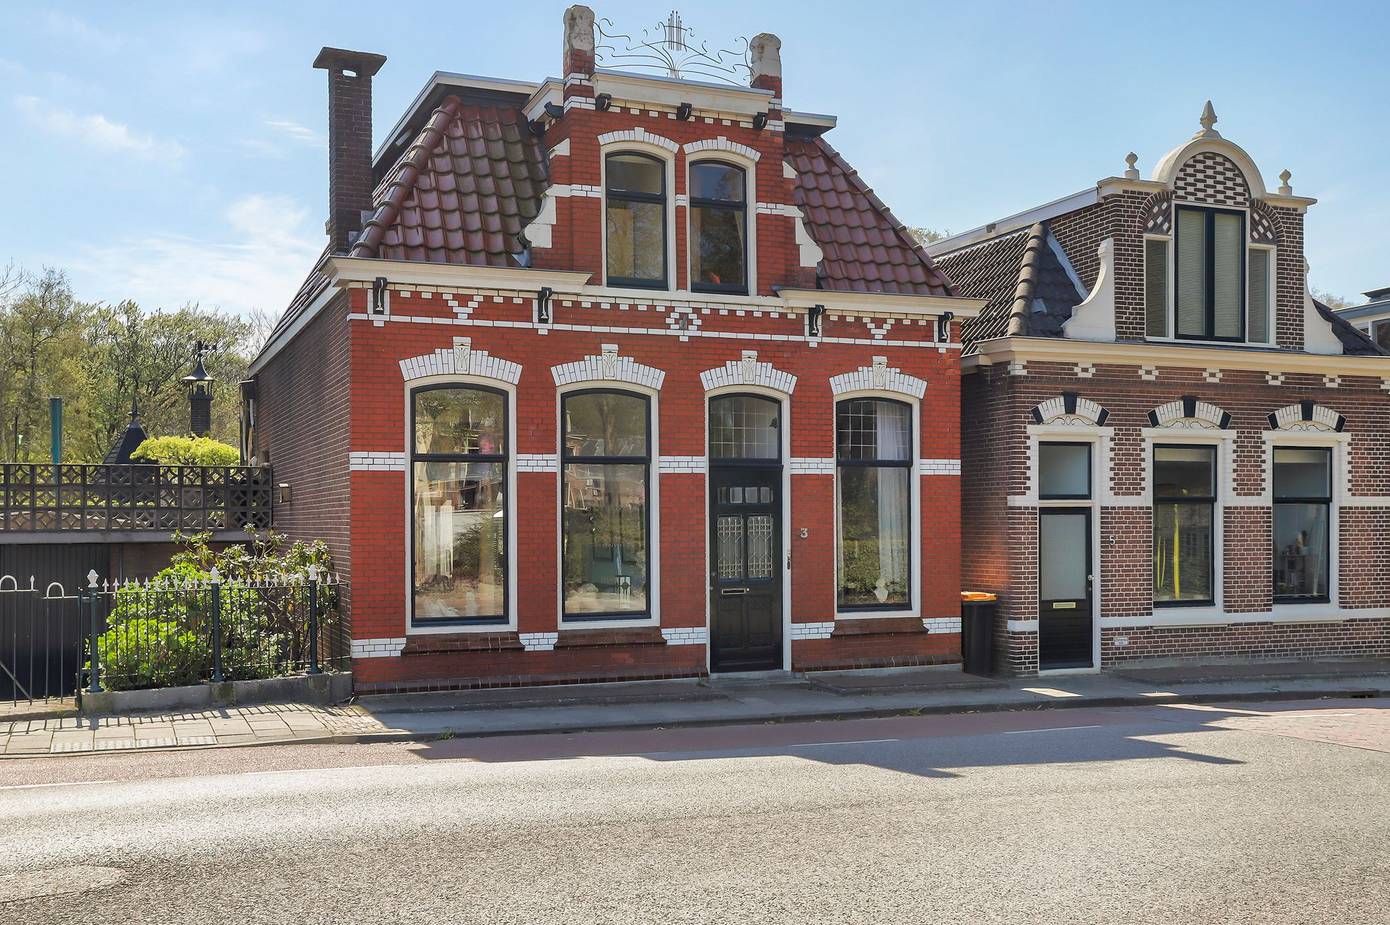 Te koop in Assen: karakteristieke vrijstaande woning met grote tuin nabij Asserbos